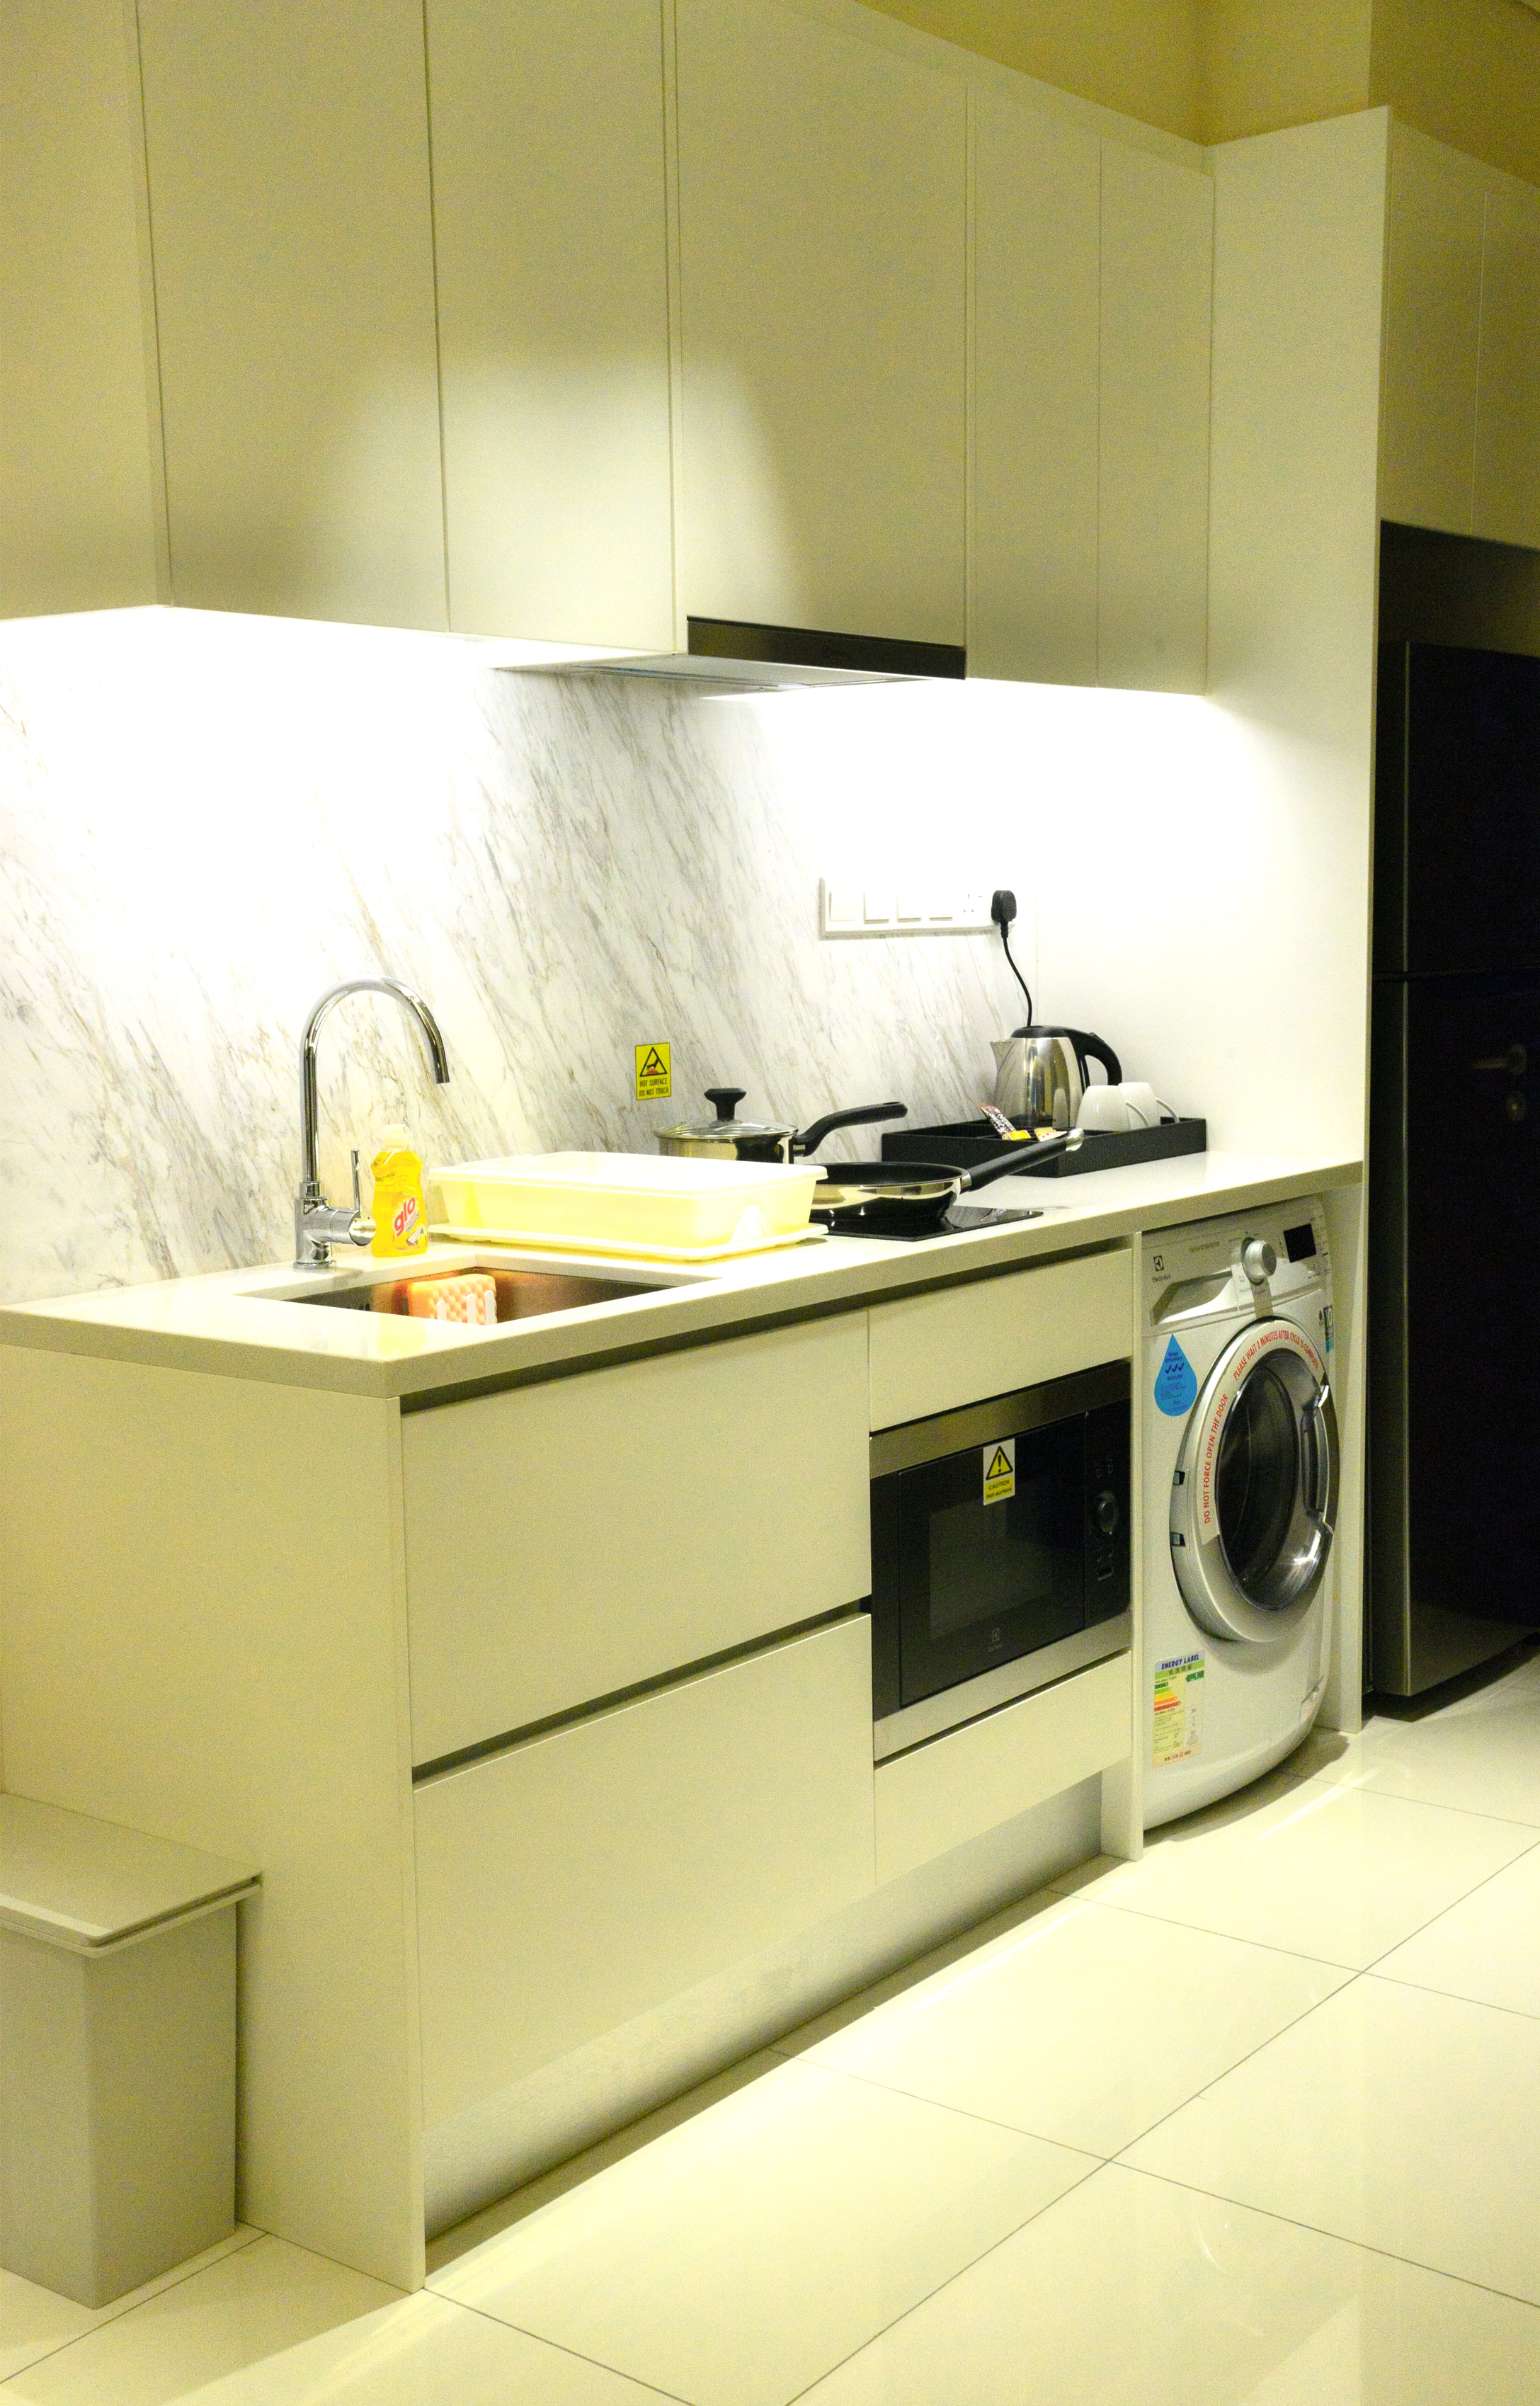 Tribeca Serviced Suites Bukit Bintang